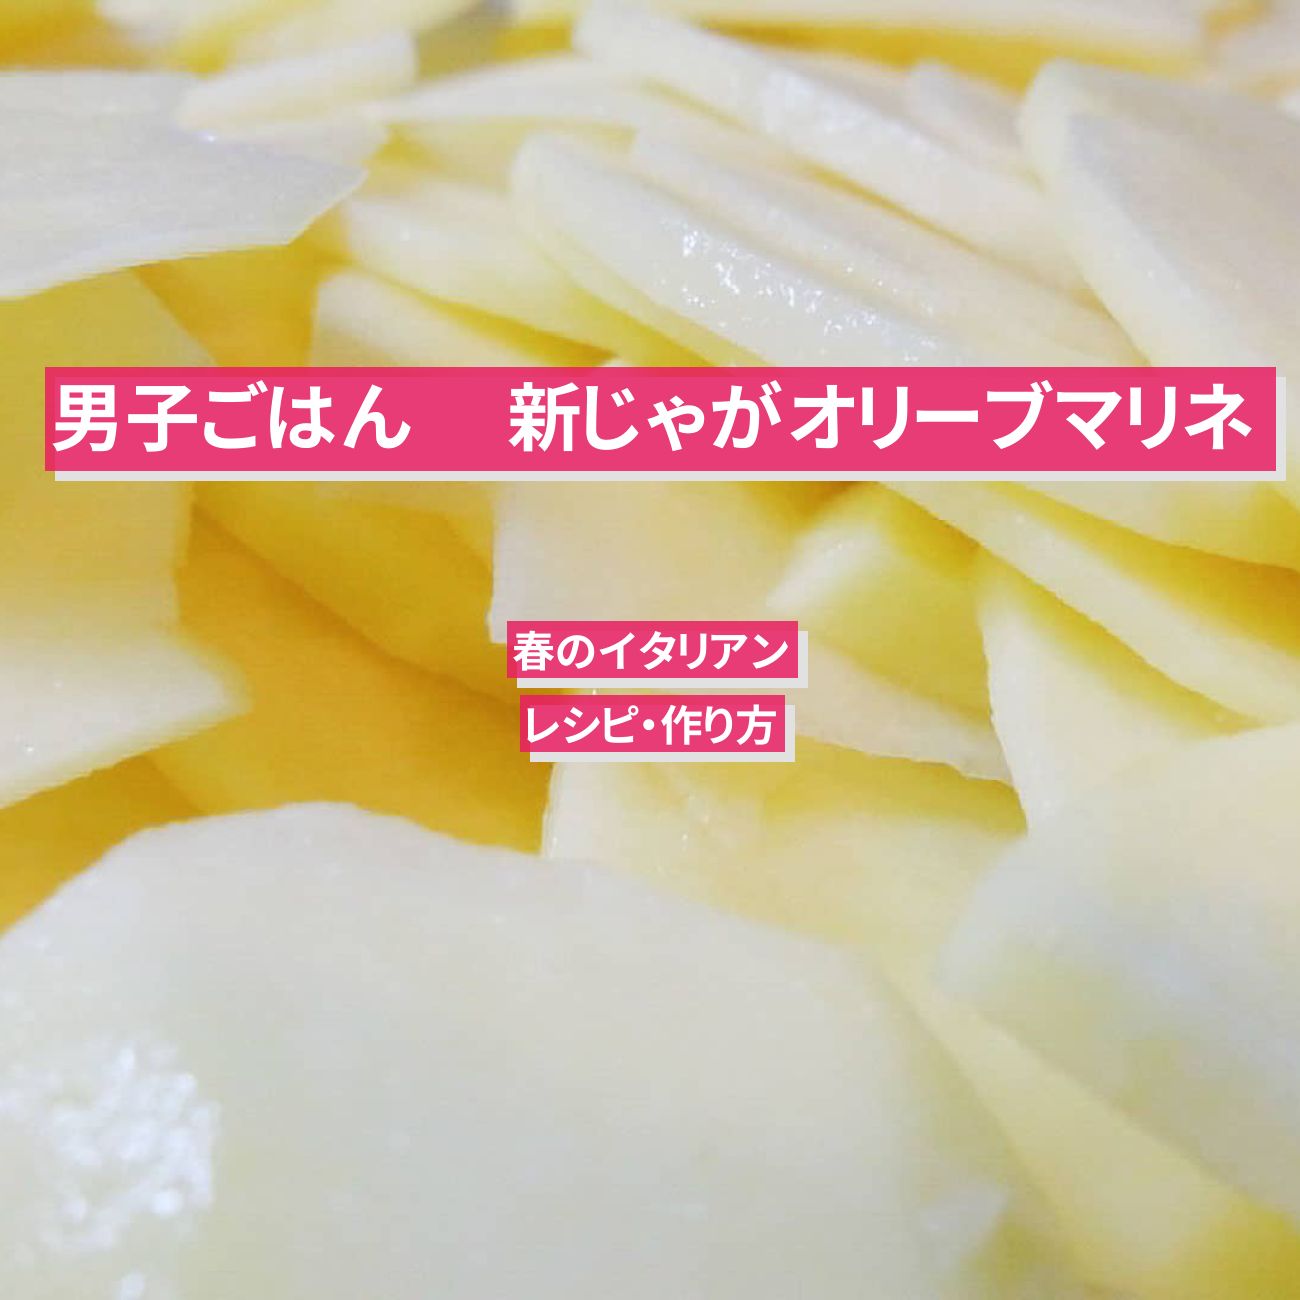 【男子ごはん】ジャガイモで 『新じゃがオリーブマリネ』のレシピ・作り方